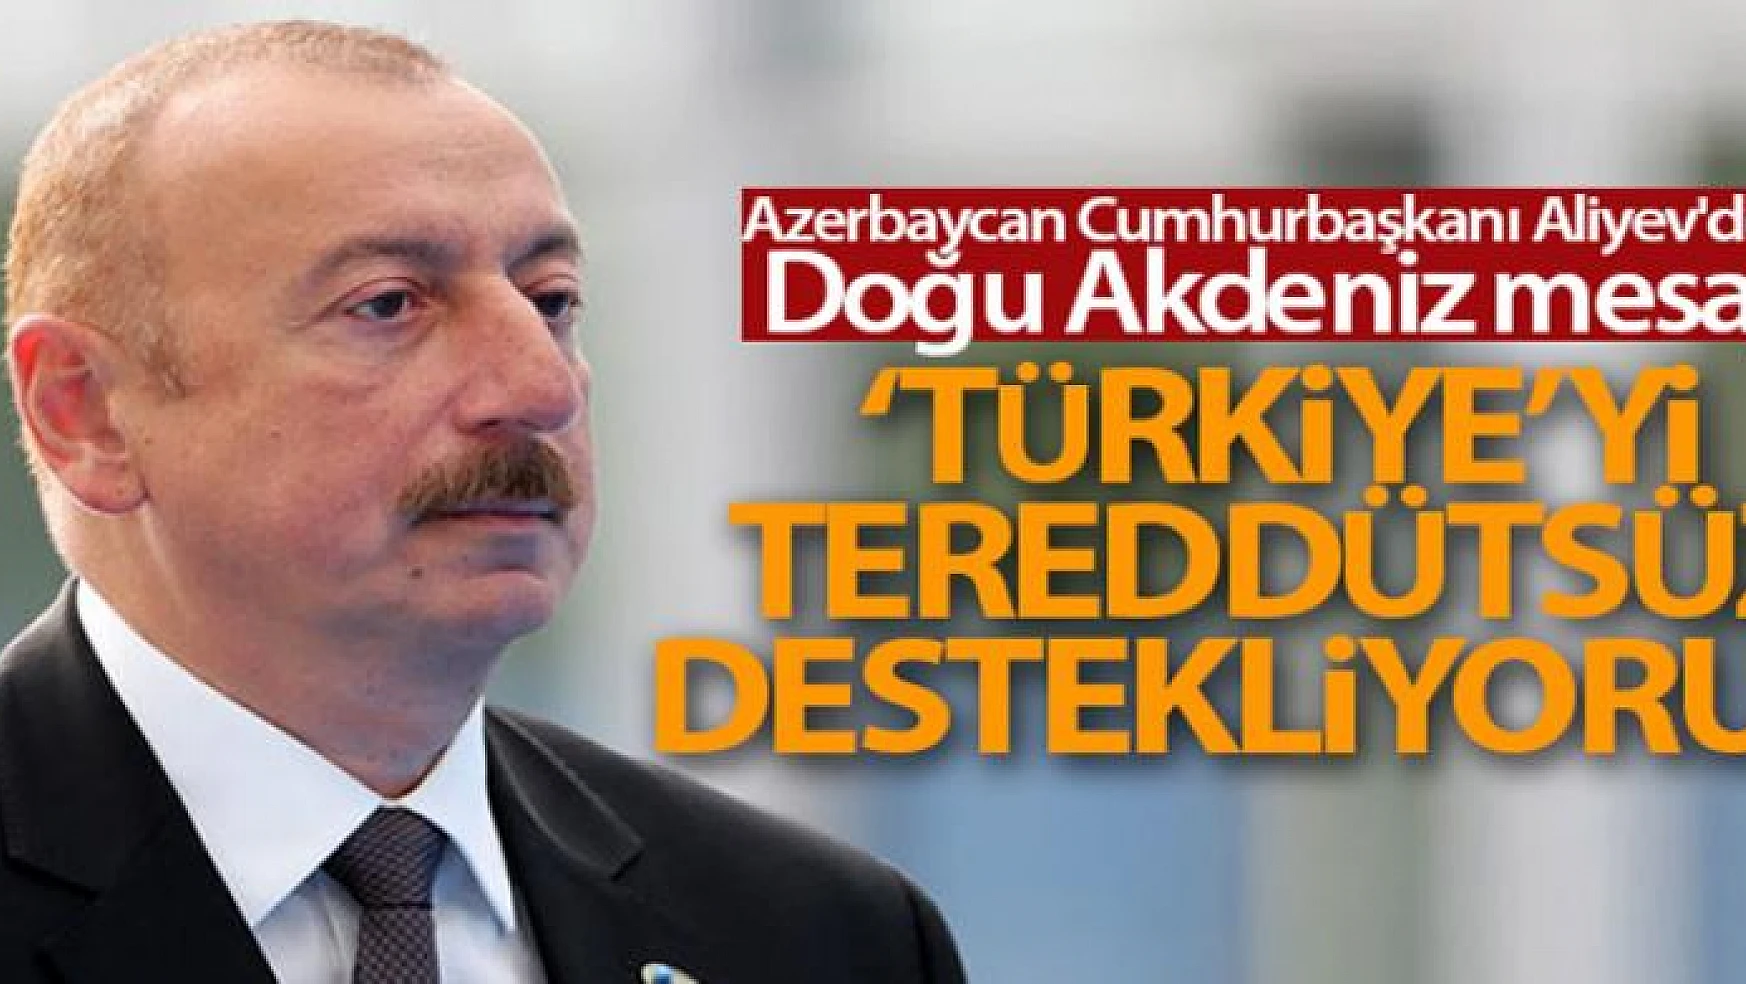 Azerbaycan Cumhurbaşkanı Aliyev'den Doğu Akdeniz mesajı: 'Türkiye'yi tereddütsüz destekliyoruz'